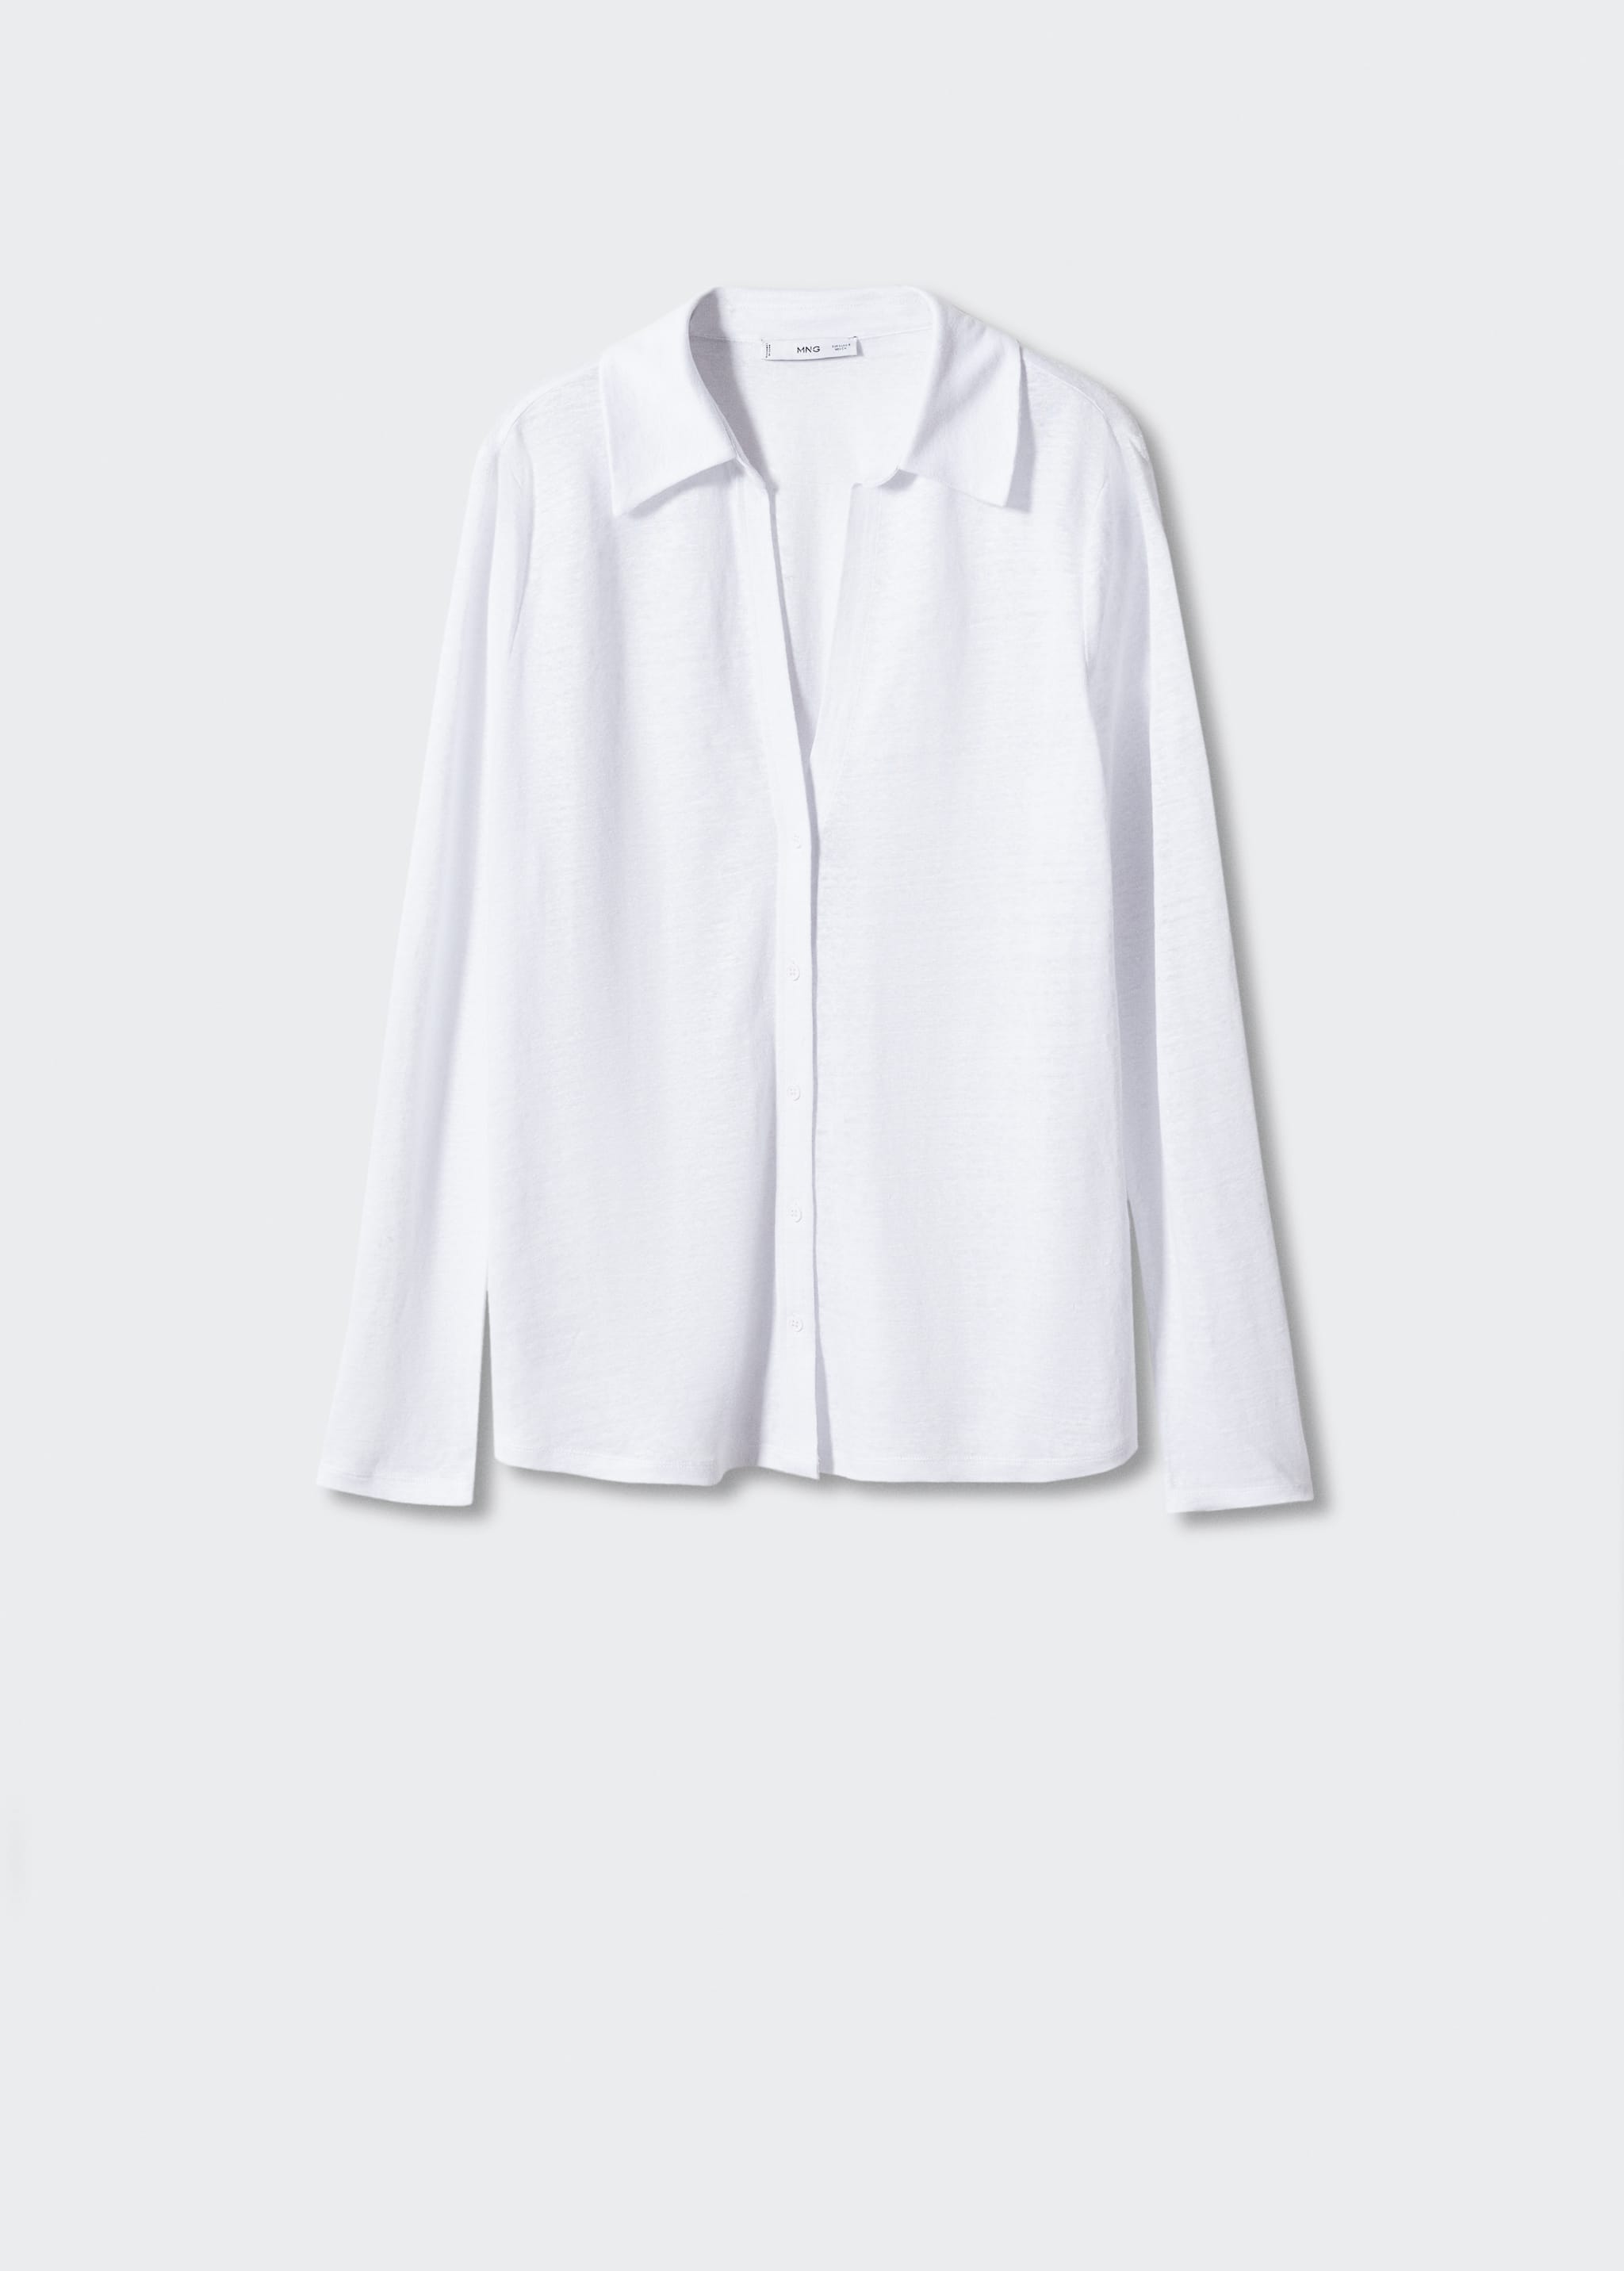 Camisa lino cuello pico - Artículo sin modelo